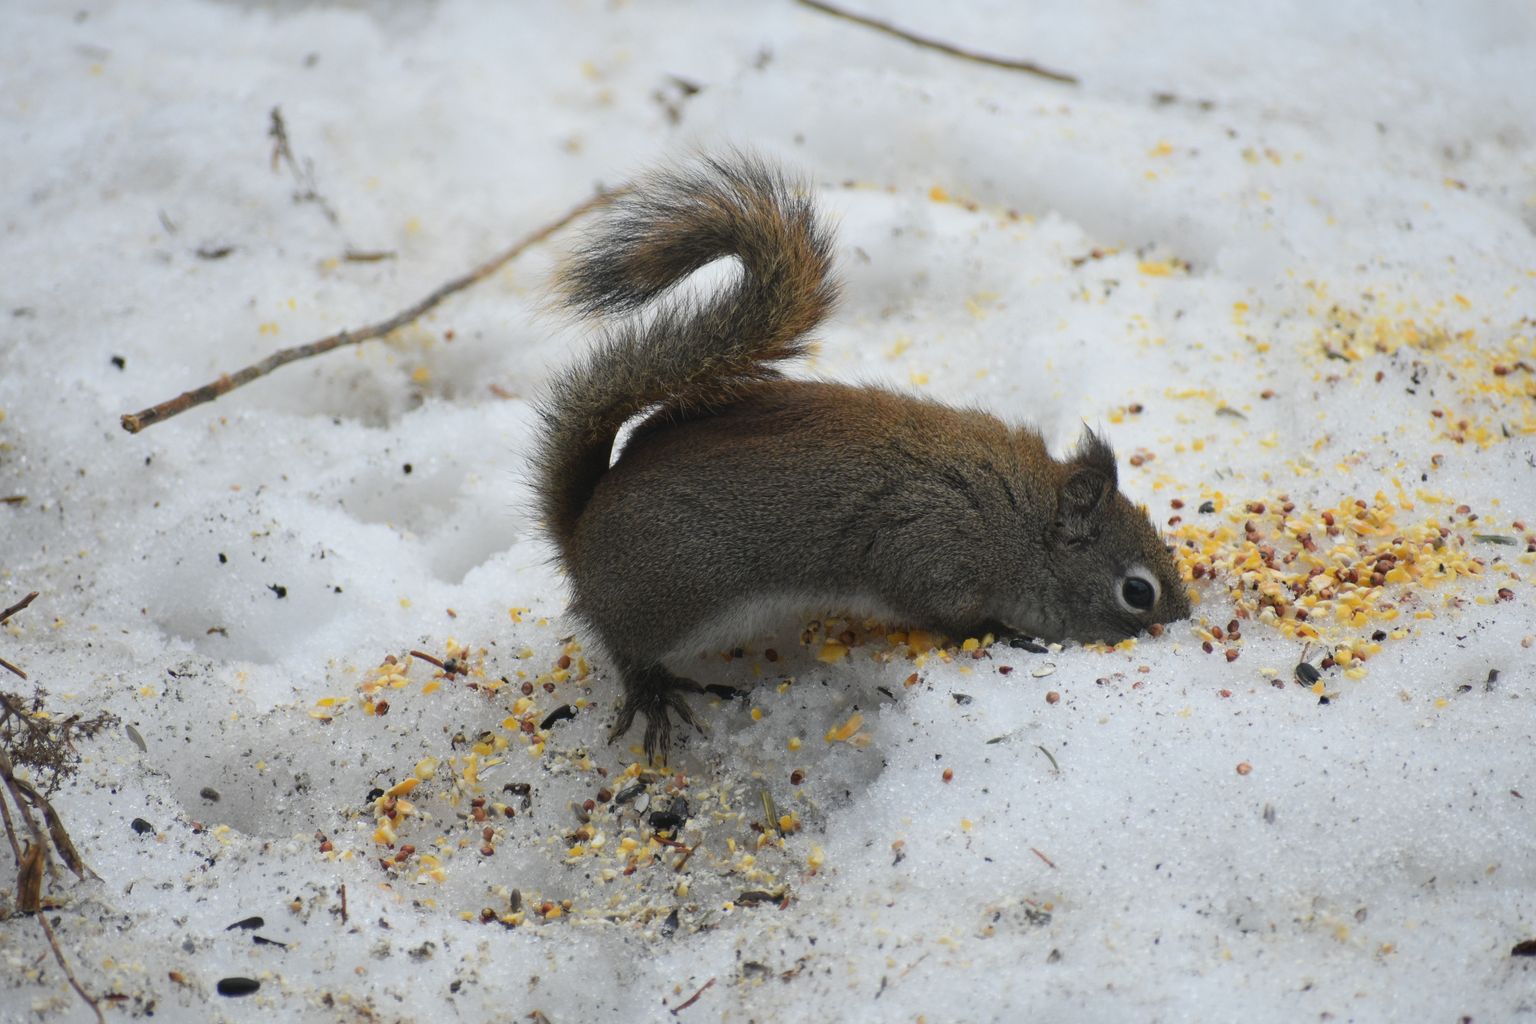 Kui mõned pisemad loomad veedavad kogu oma talve lume all, siis rohkem külalisi saabub sinna külmematel päevadel. Pilt on illustreeriv.